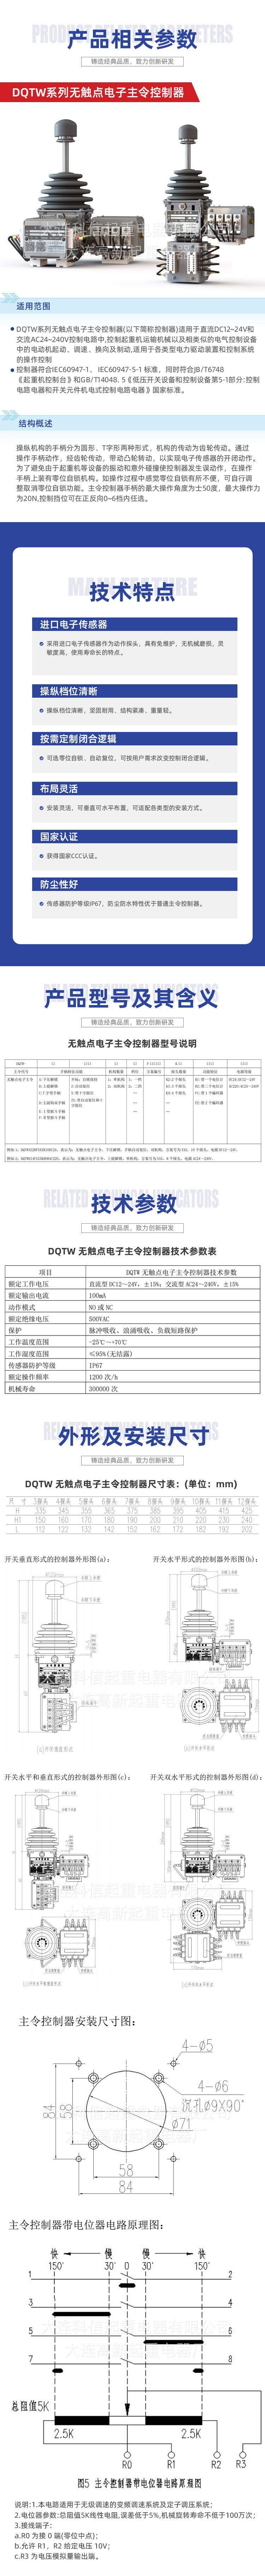 DQTW 系列无触点电子主令控制器.jpg